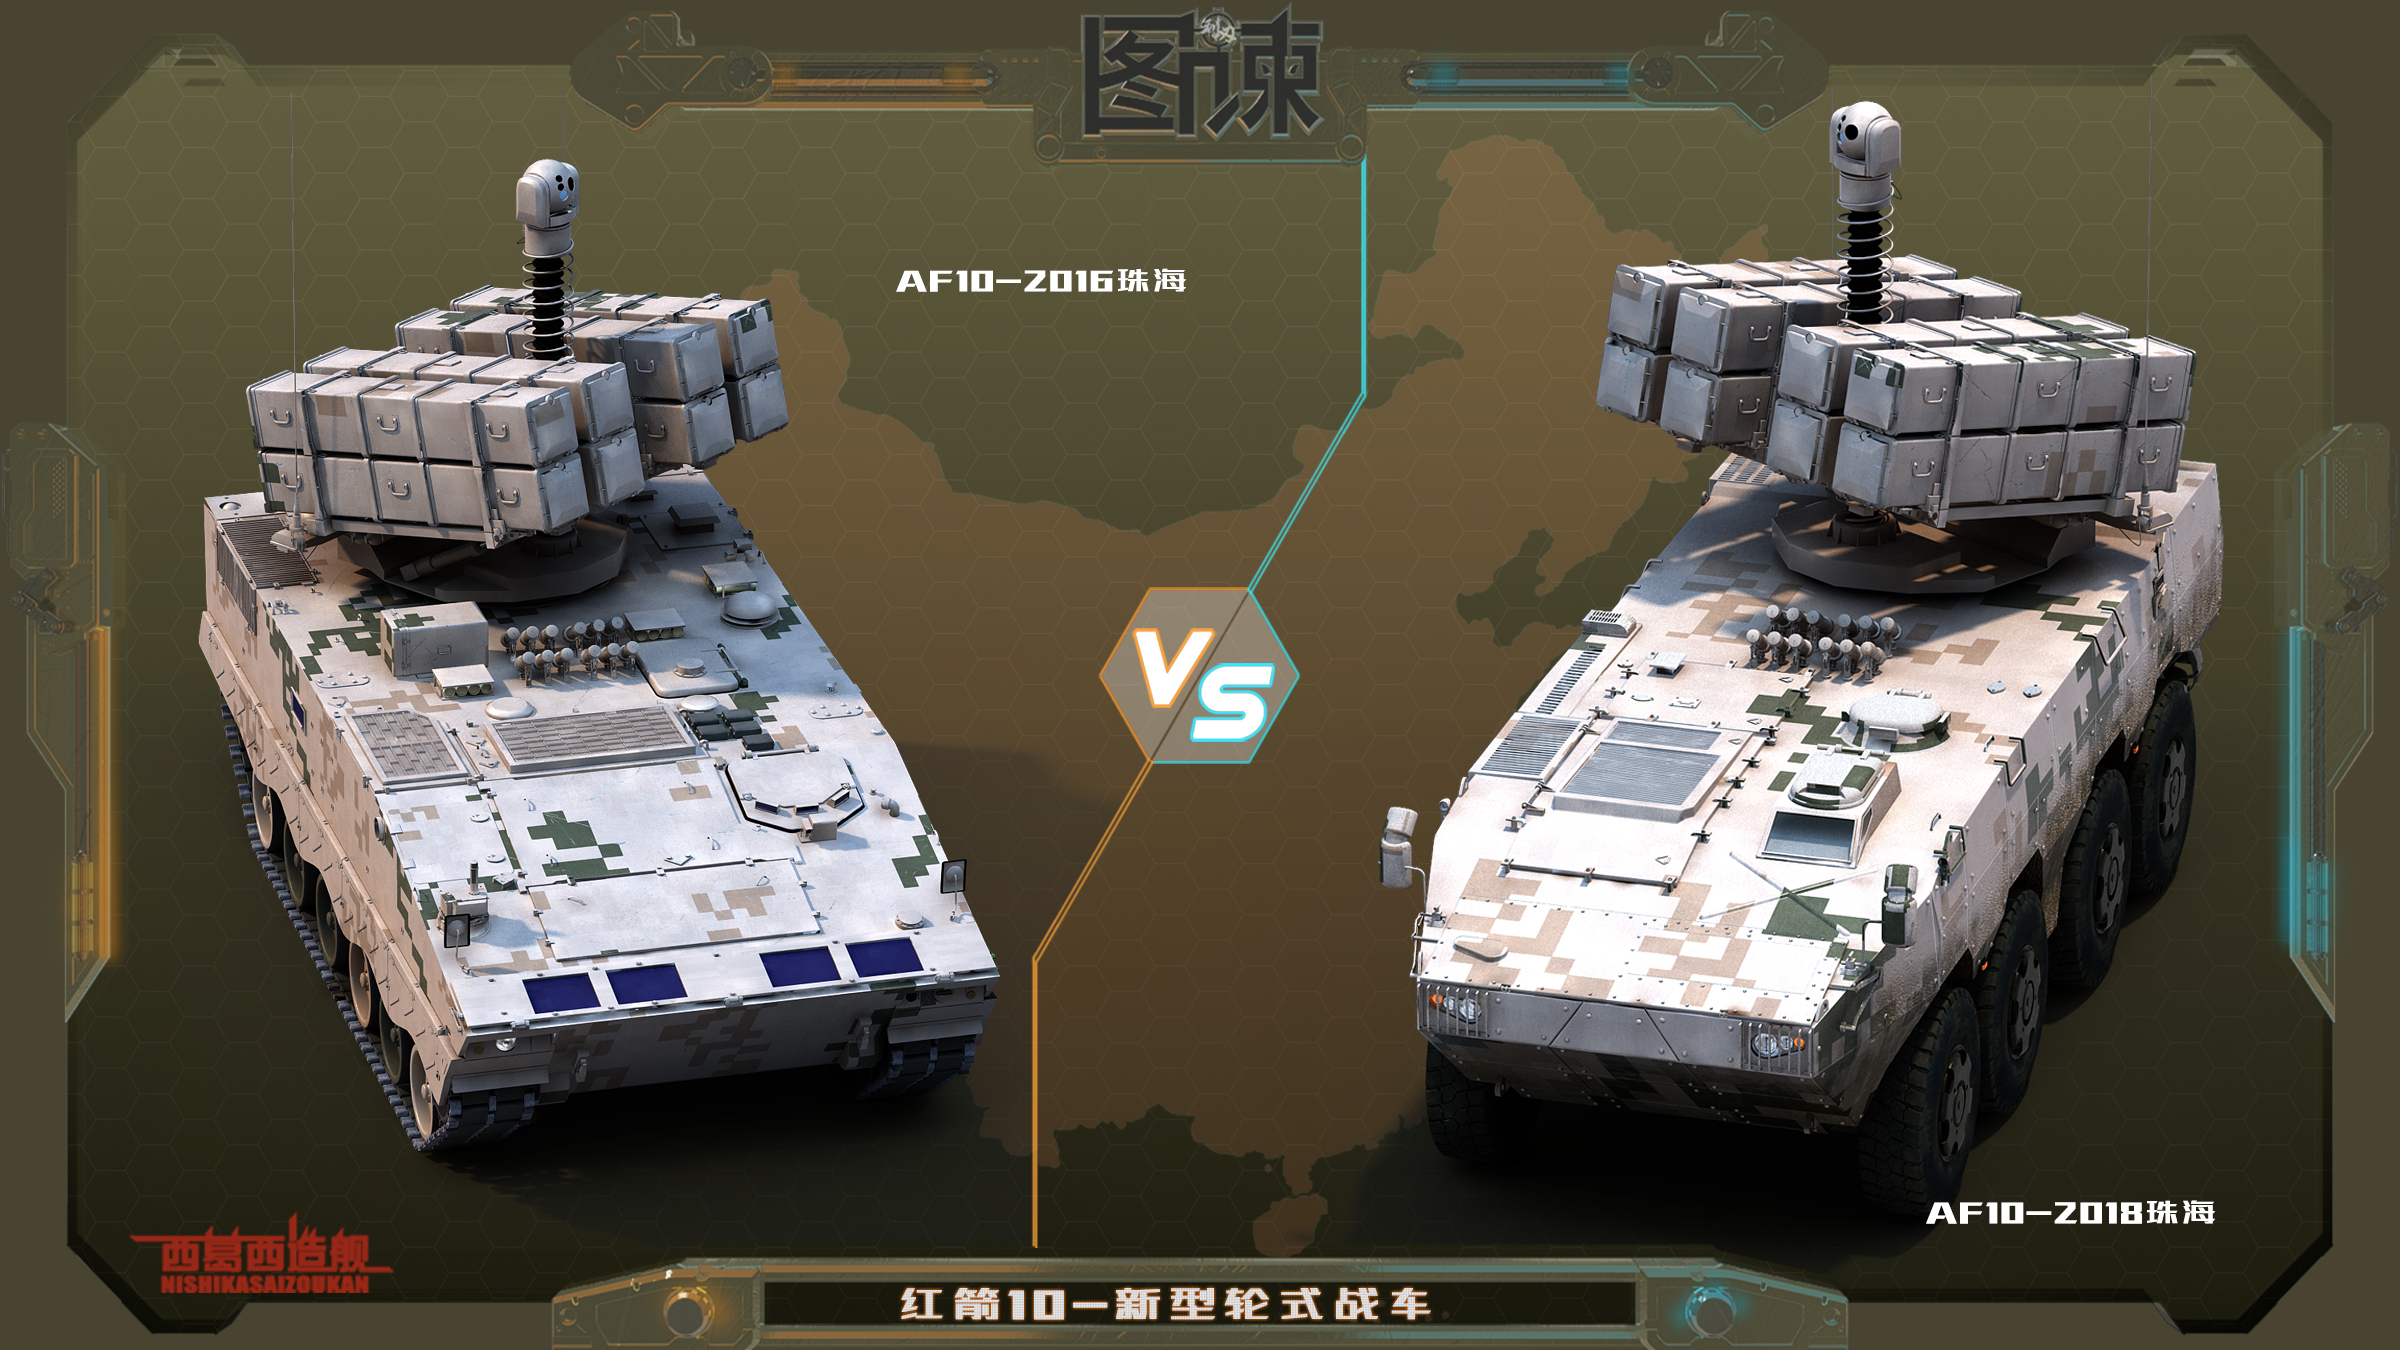 图谏cg:一次击毁8辆坦克!中国最新款大八轮战车亮相